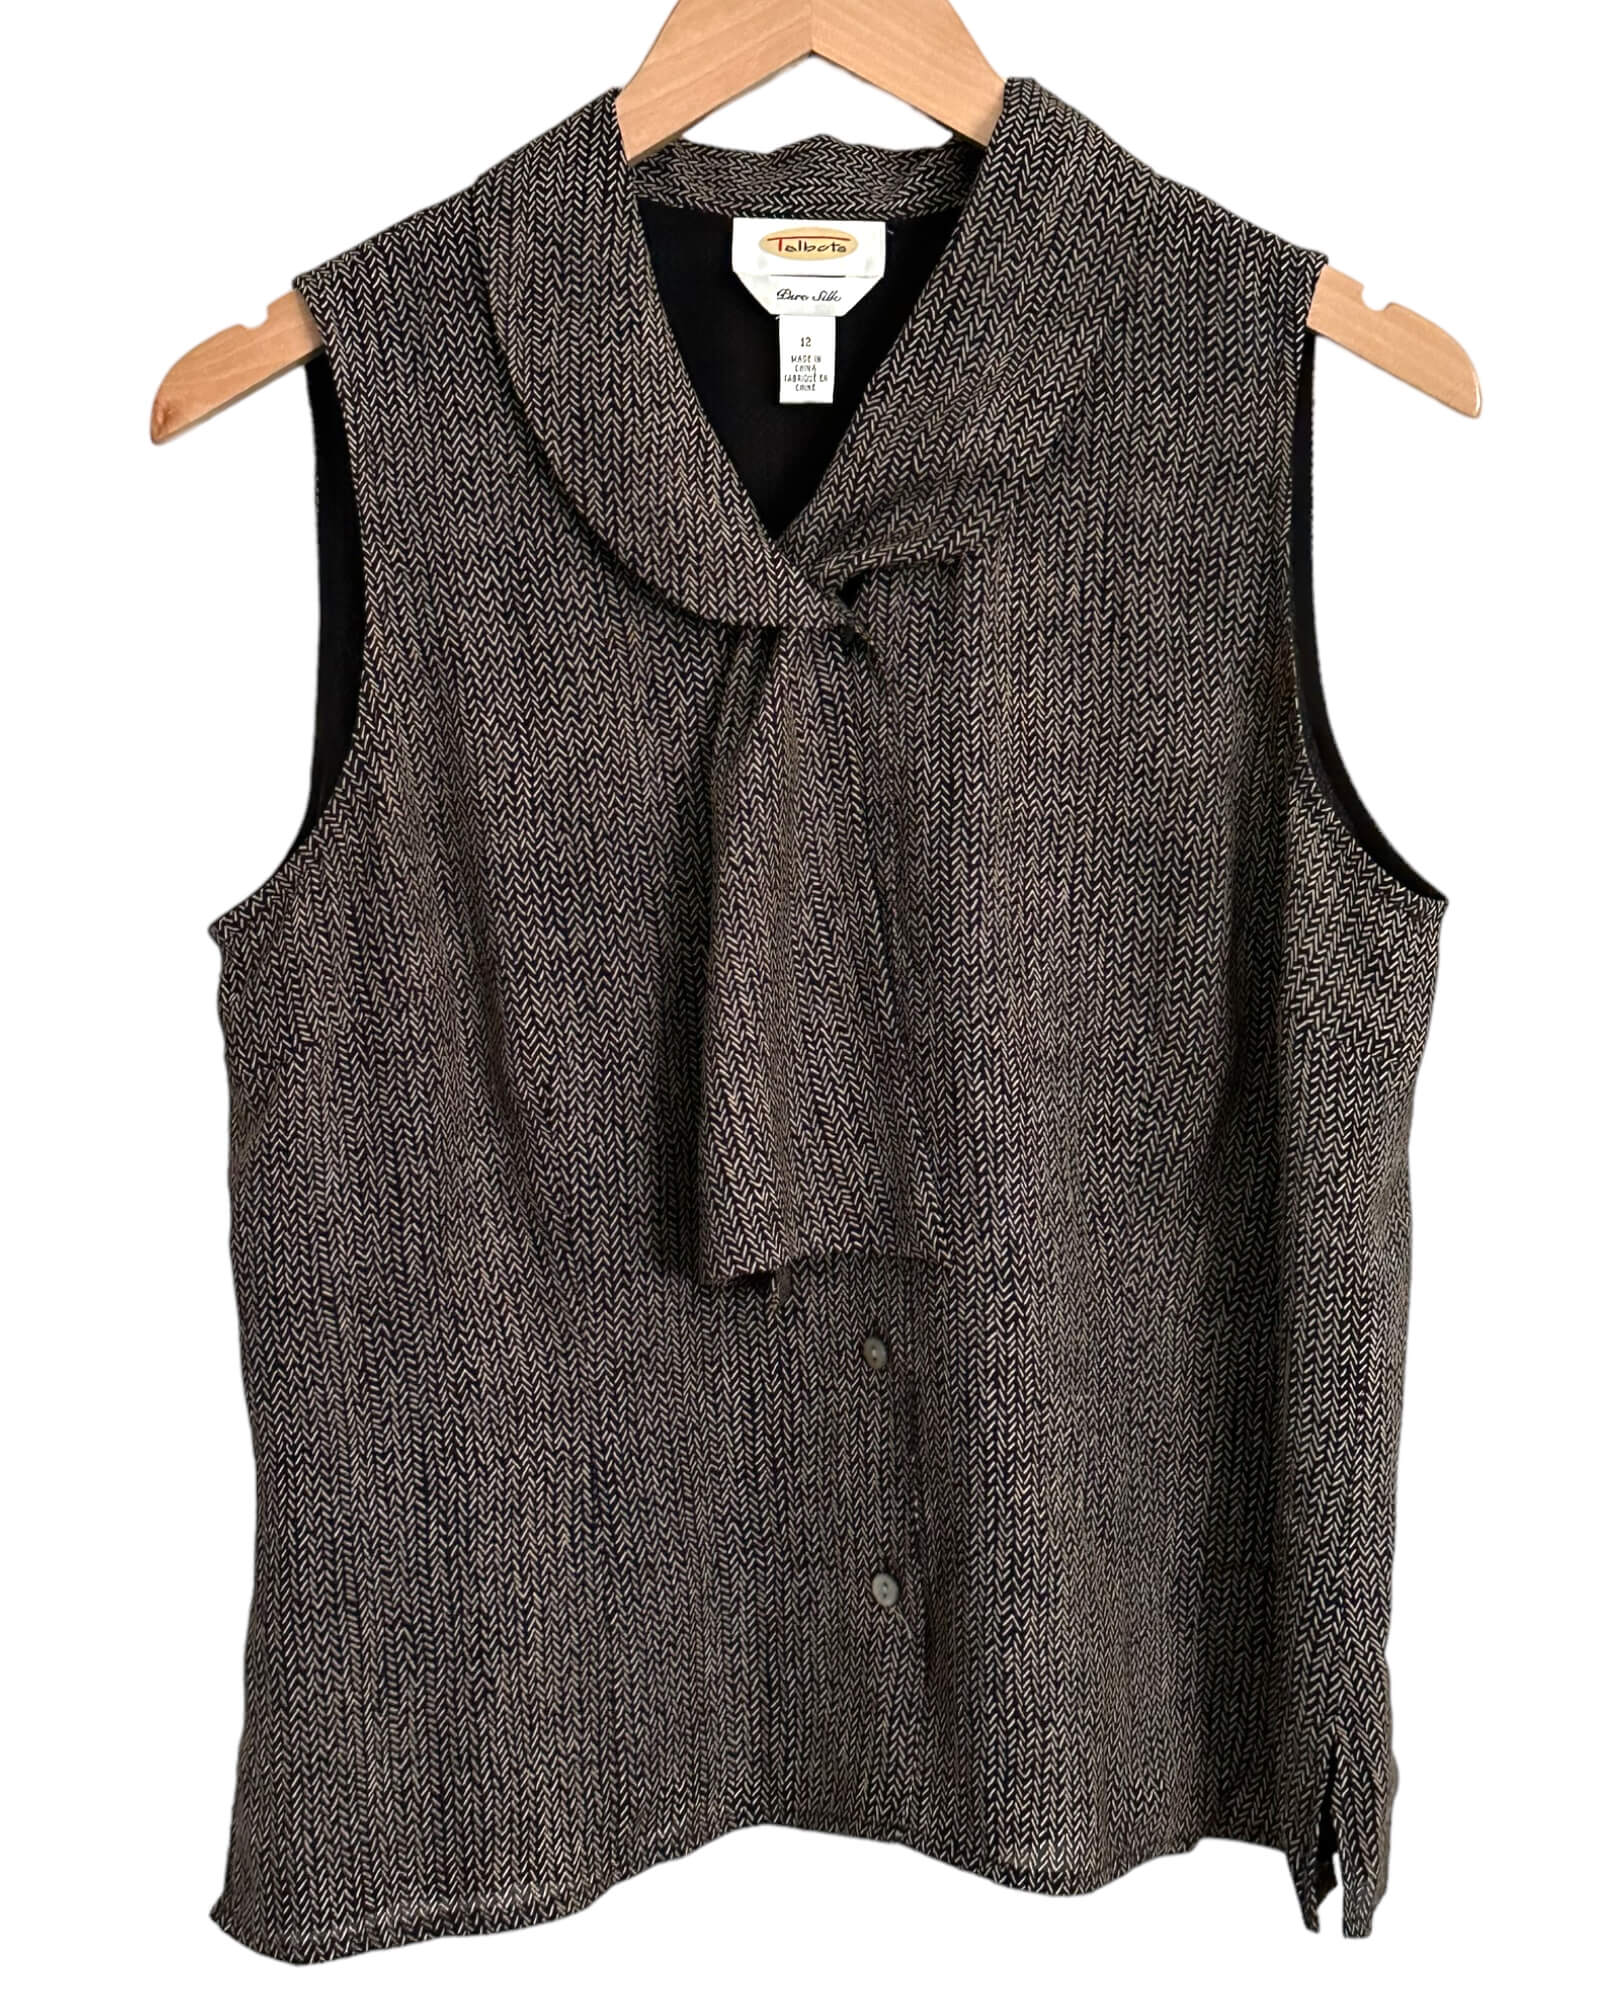 Dark Autumn TALBOTS print silk sash sleeveless blouse